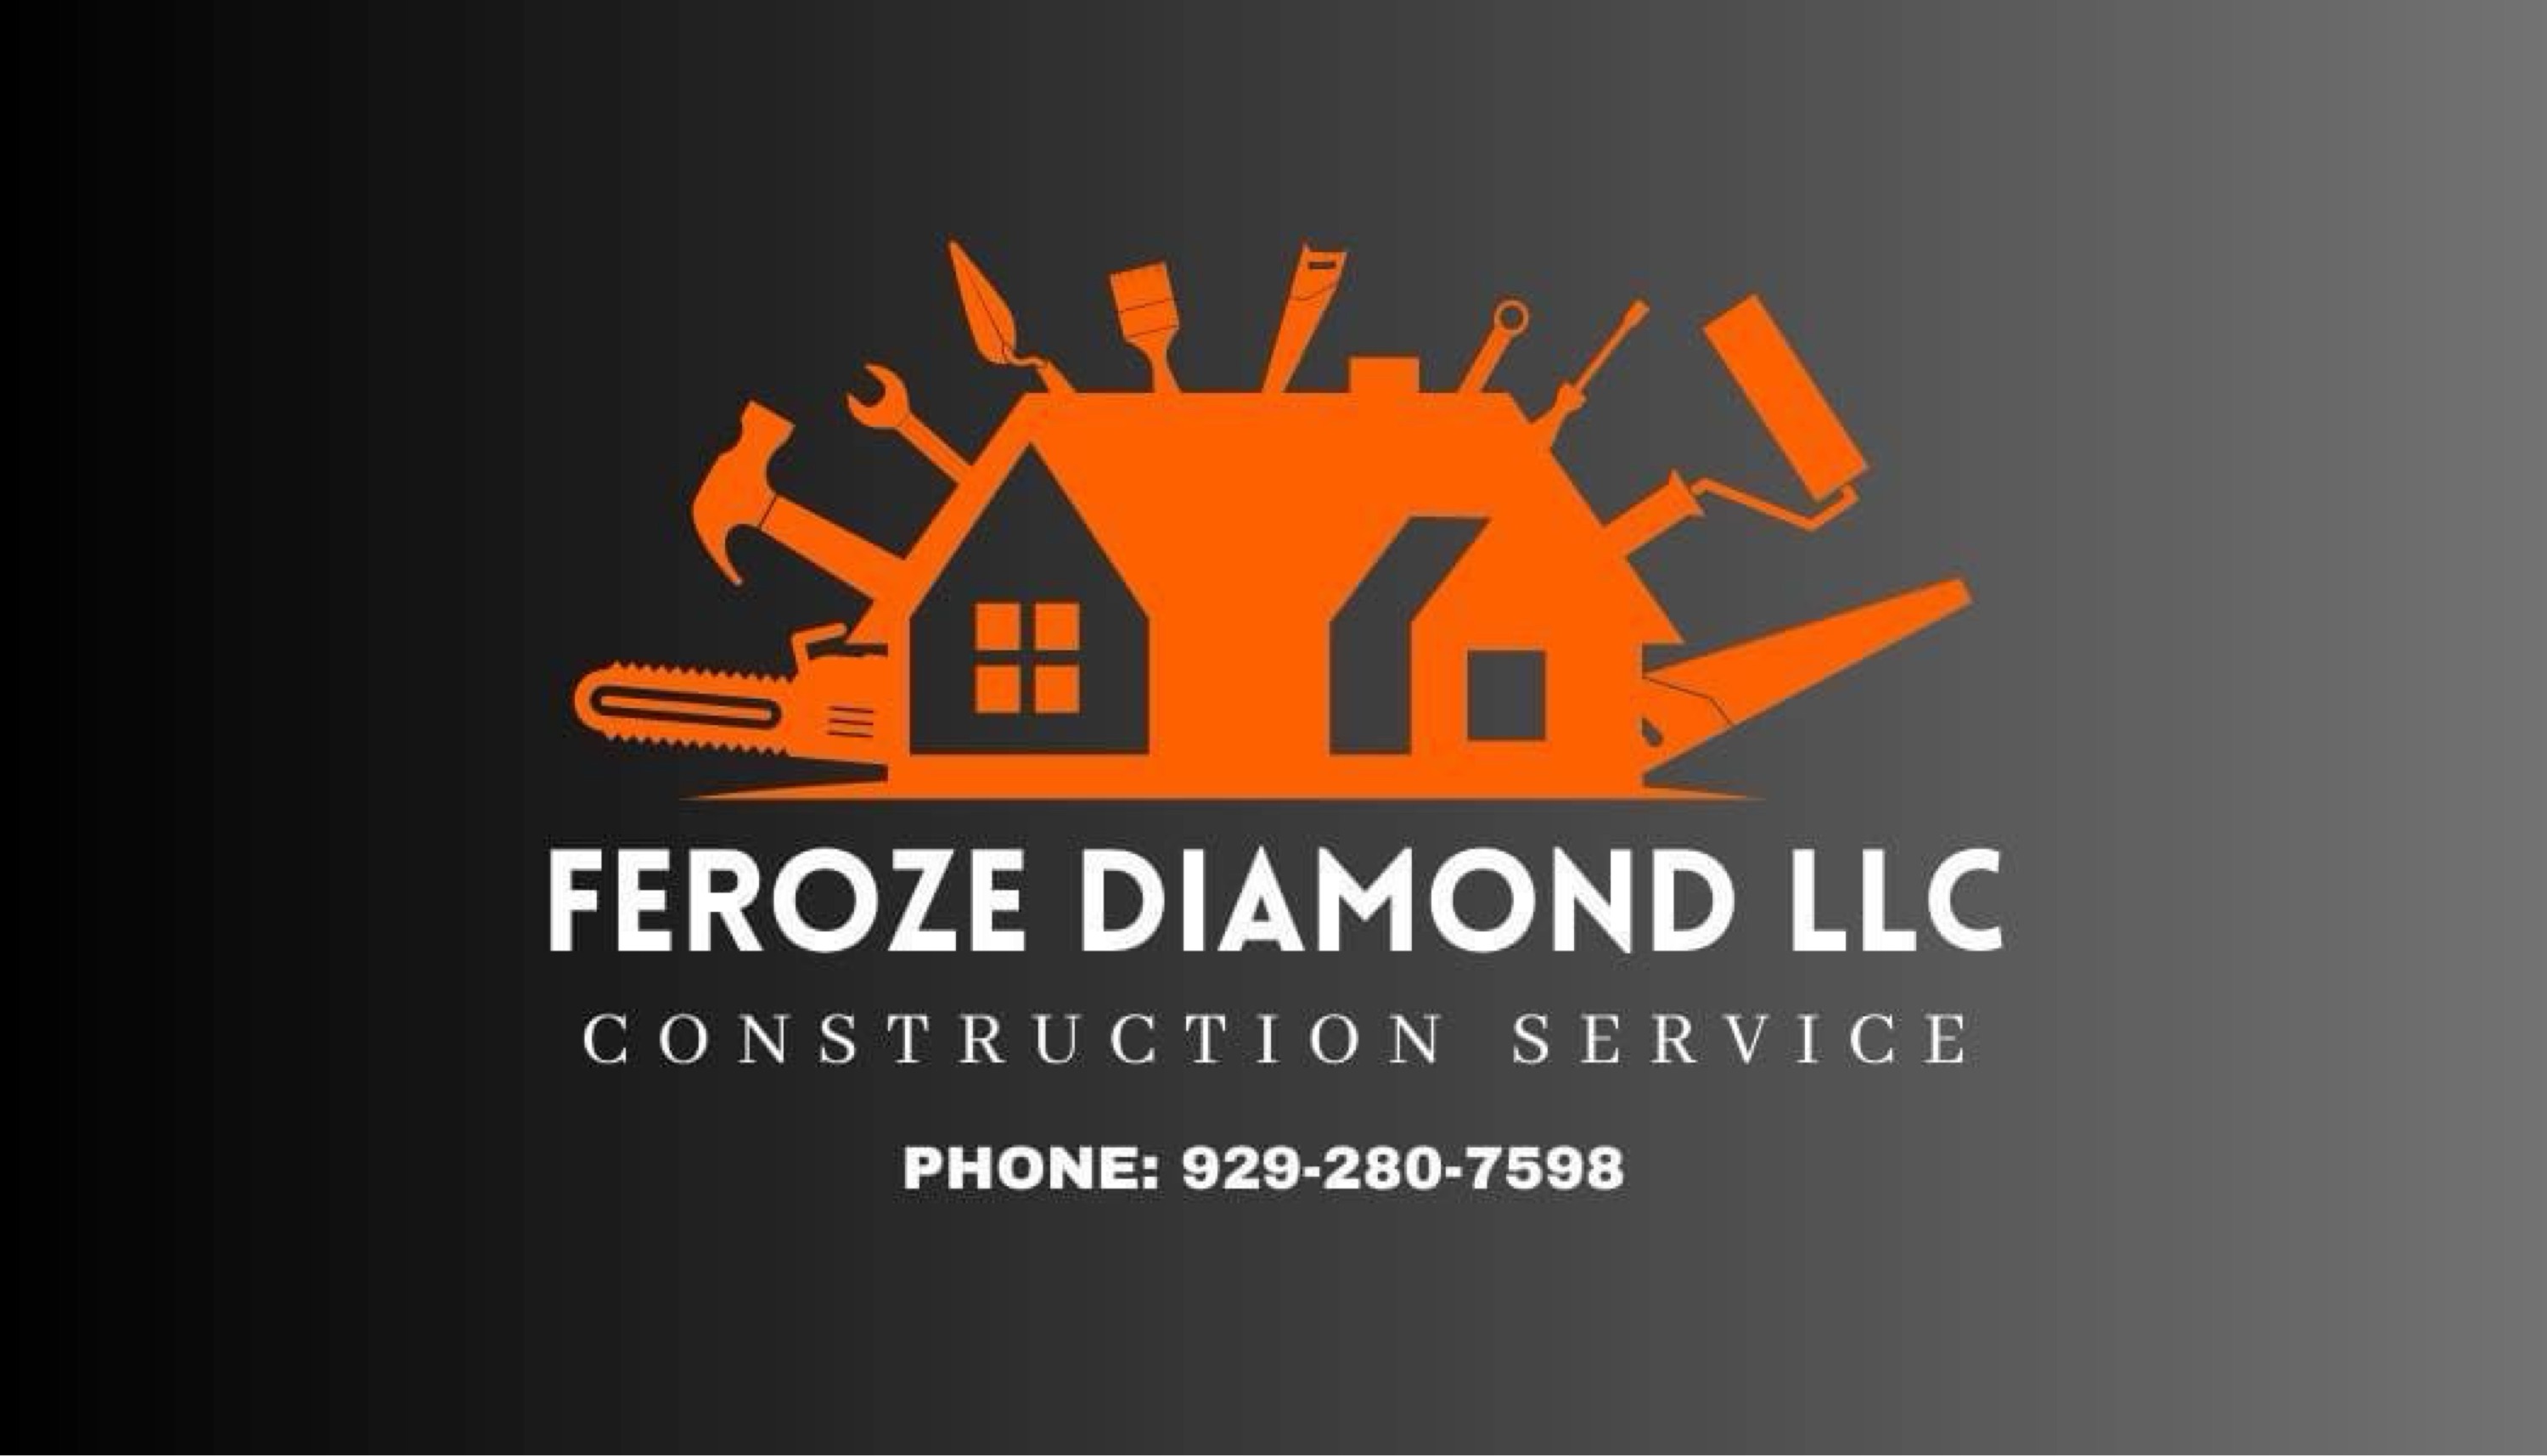 Feroze Diamond LLC Logo